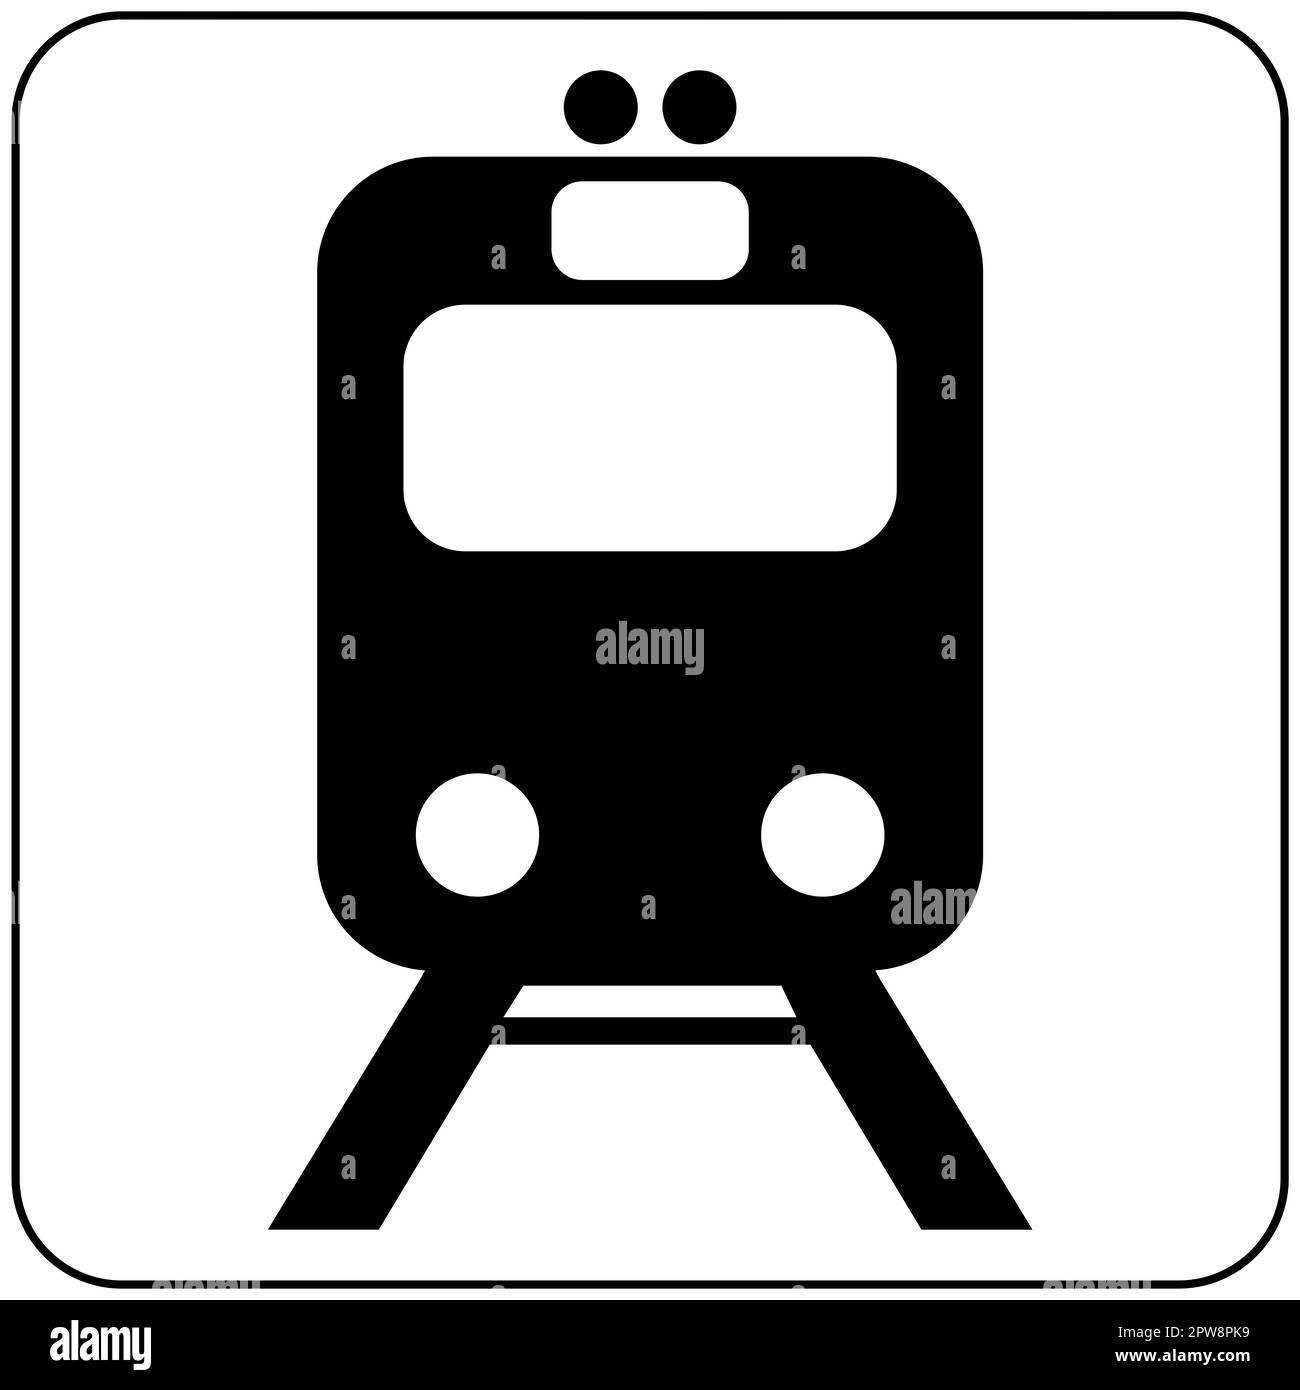 Pittogramma del Dipartimento dei Trasporti ferroviari Foto Stock